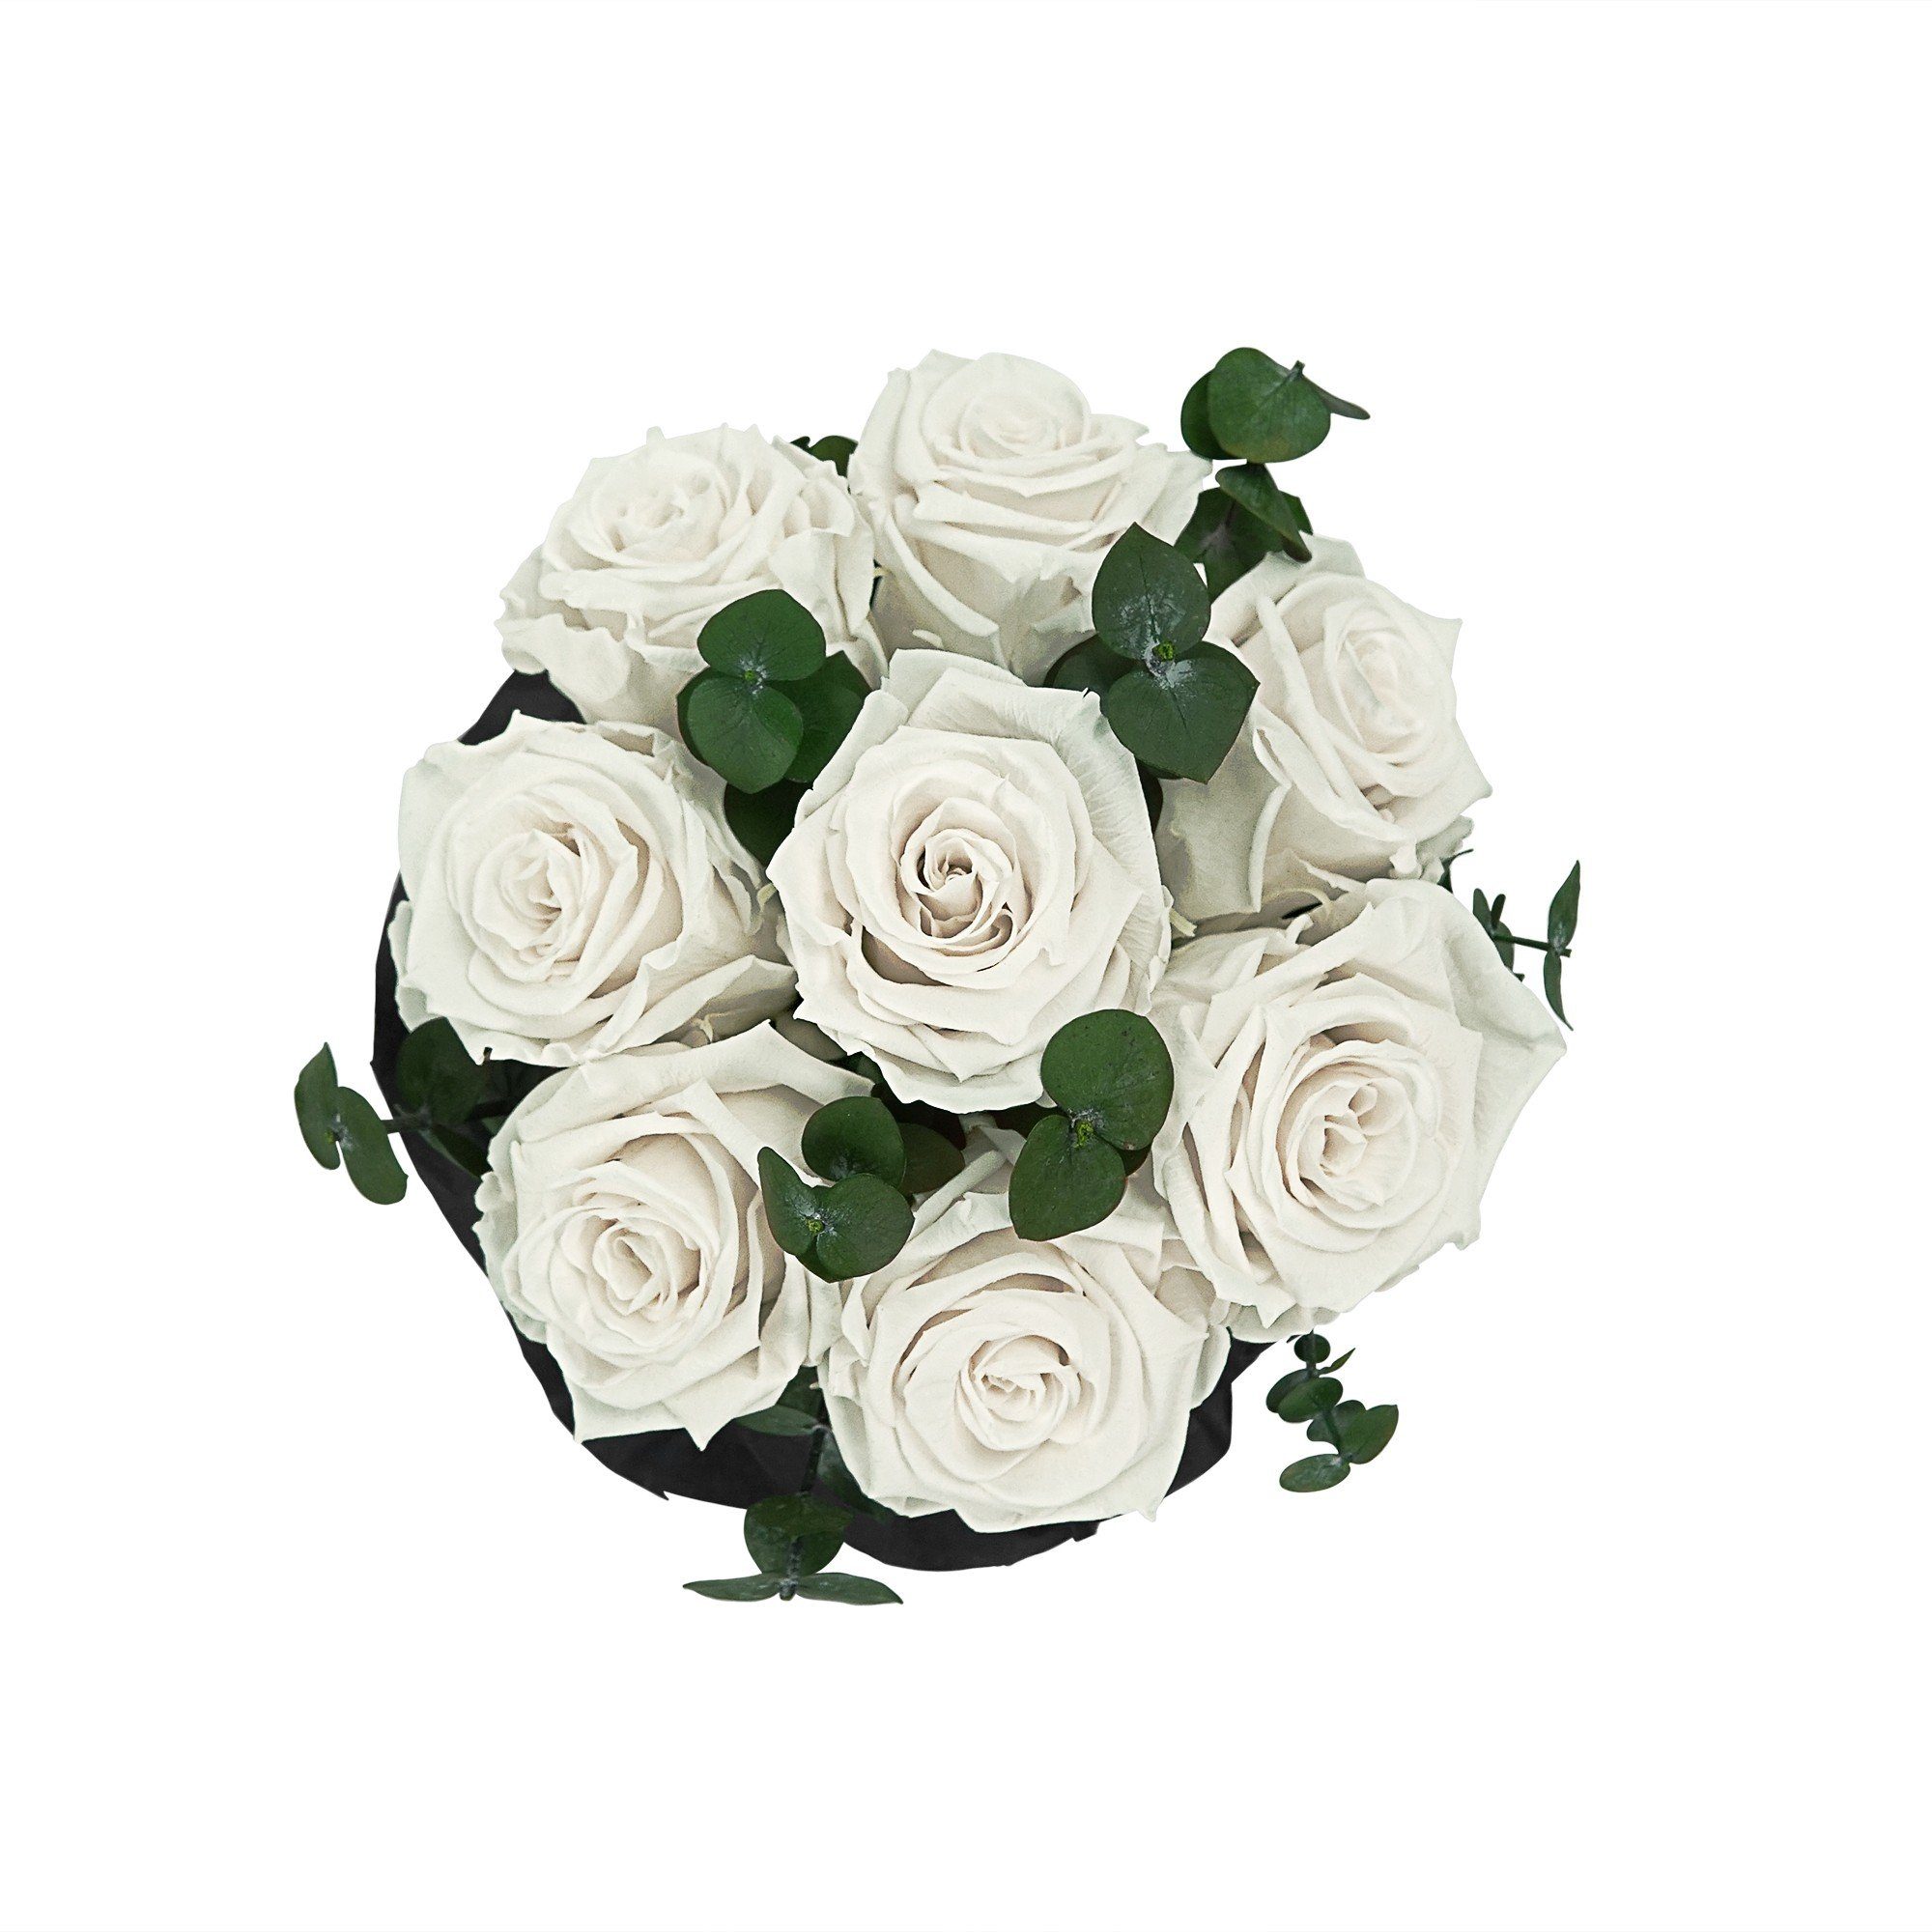 3 konservierte haltbar Rose, Rosenbox Flowers Weiß mit duftende Kunstblume I Holy I Blumen I Raul by Jahre Bouquet Echte, 7-9 Rosen Richter Infinity